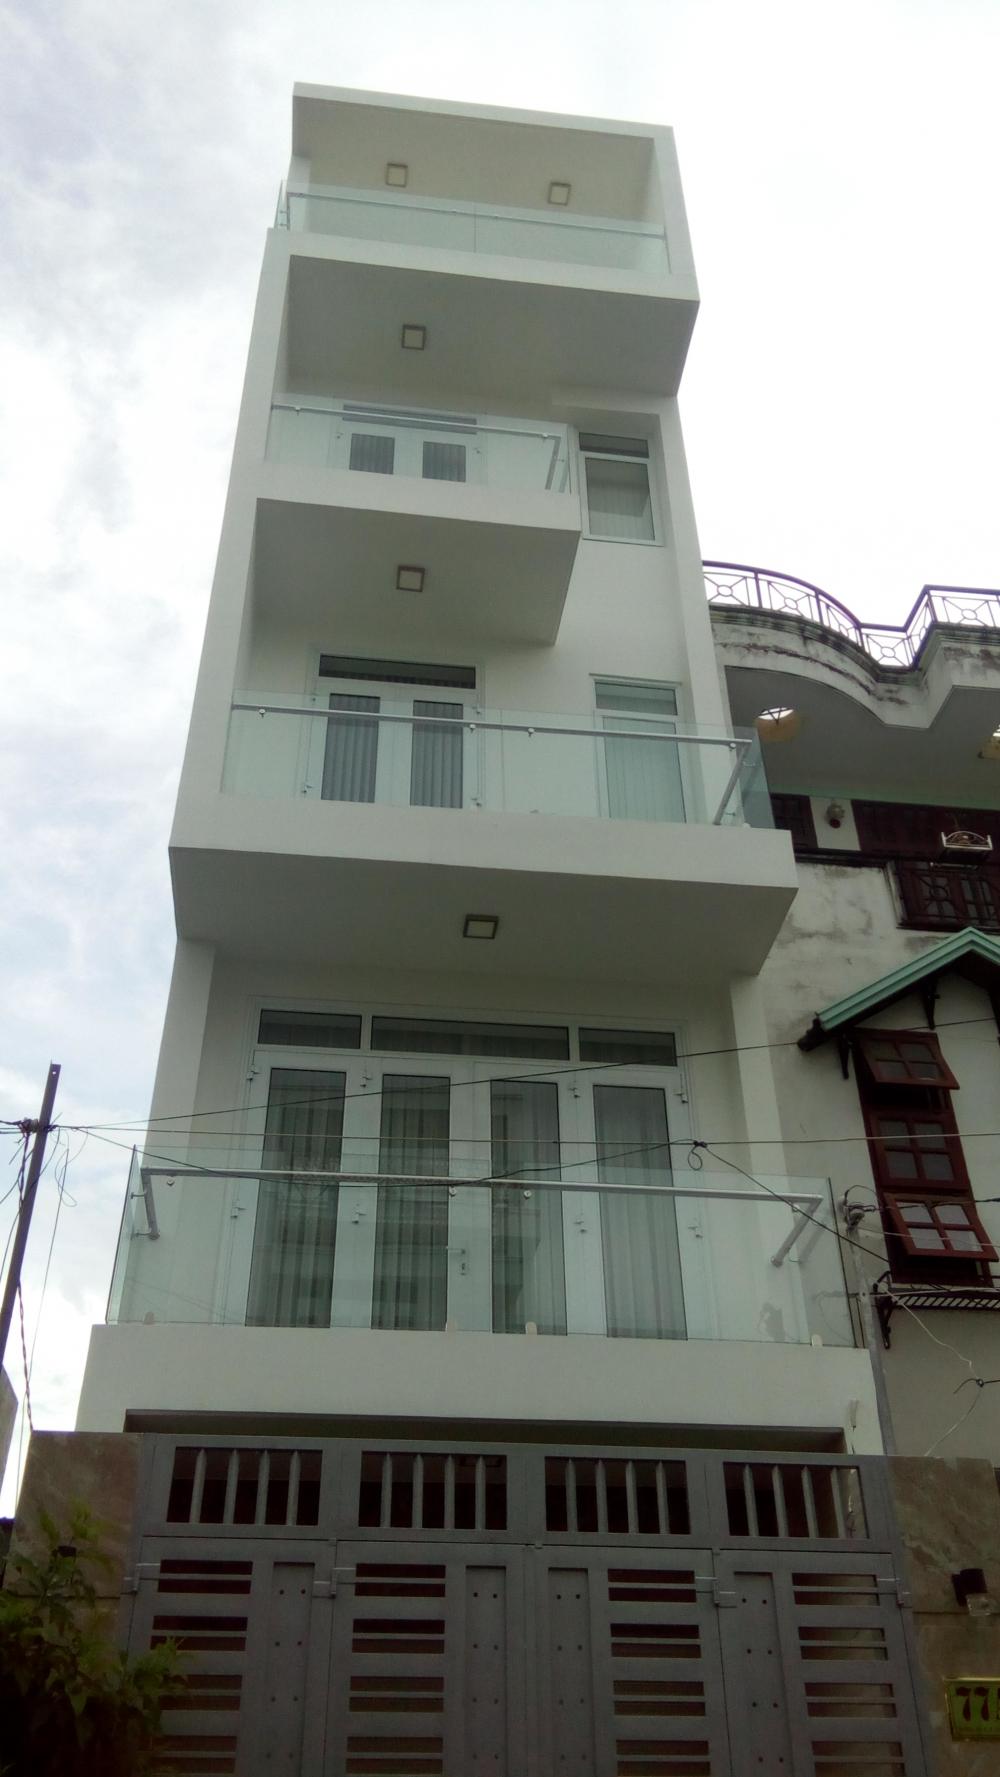 Bán nhà mới, đẹp, trệt, 2.5 lầu, hướng Tây Bắc, KDC An Phú Hưng, p. Tân Phong, Quận 7